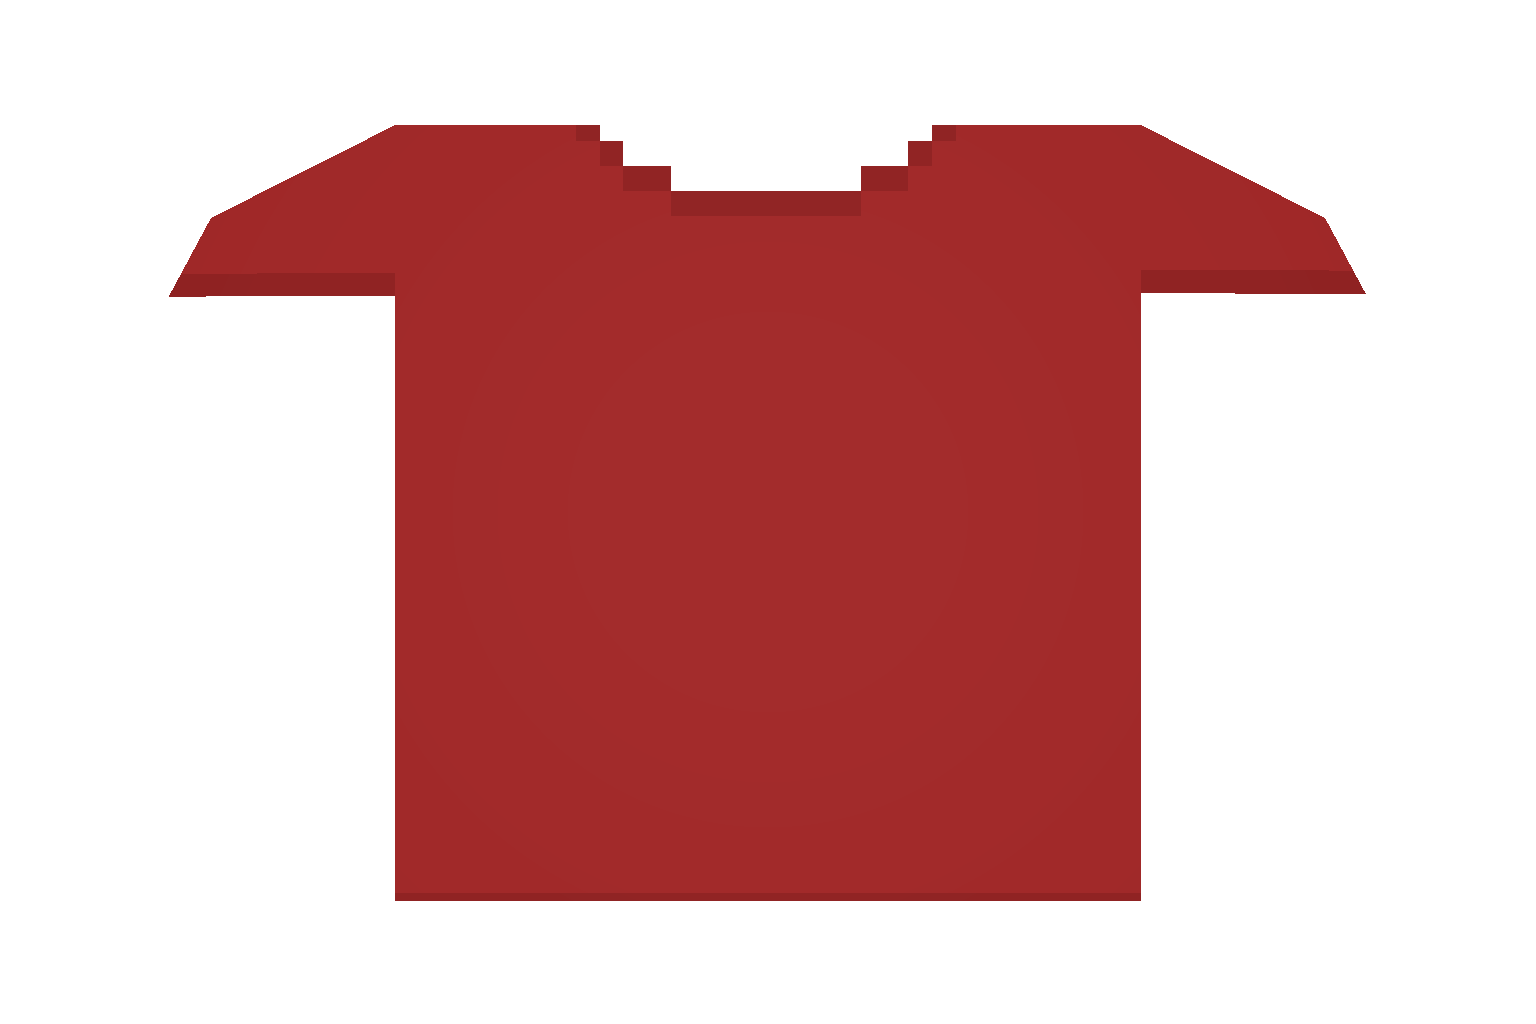 Футболки для РОБЛОКСА красные. Порванная футболка PNG. Футболка Unturned. Одежда антернед PNG. 1536 1024